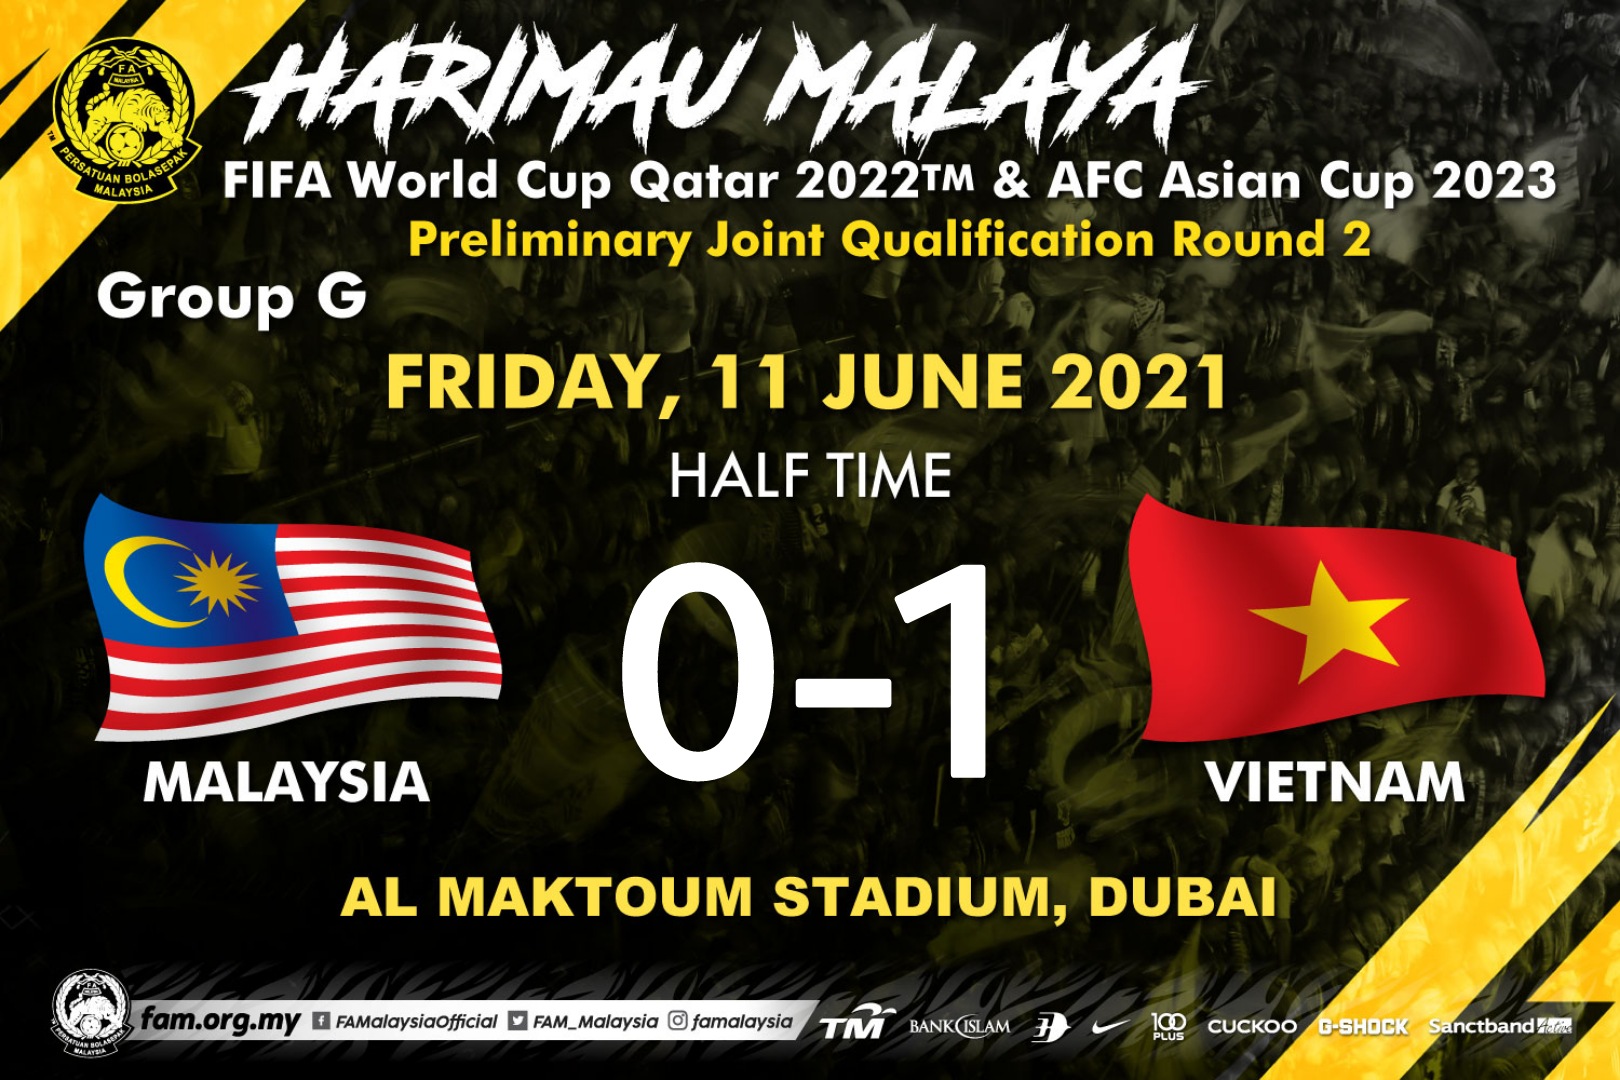 Fa Malaysia On Twitter Separuh Masa Kelayakan Piala Dunia 2022 Piala Asia 2023 11 Jun 2021 Waktu Uae Malaysia 0 1 Vietnam Nguyen Tien Linh 27 Fam Harimaumalaya Asianqualifiers Https T Co Xog2f2dot8 Twitter